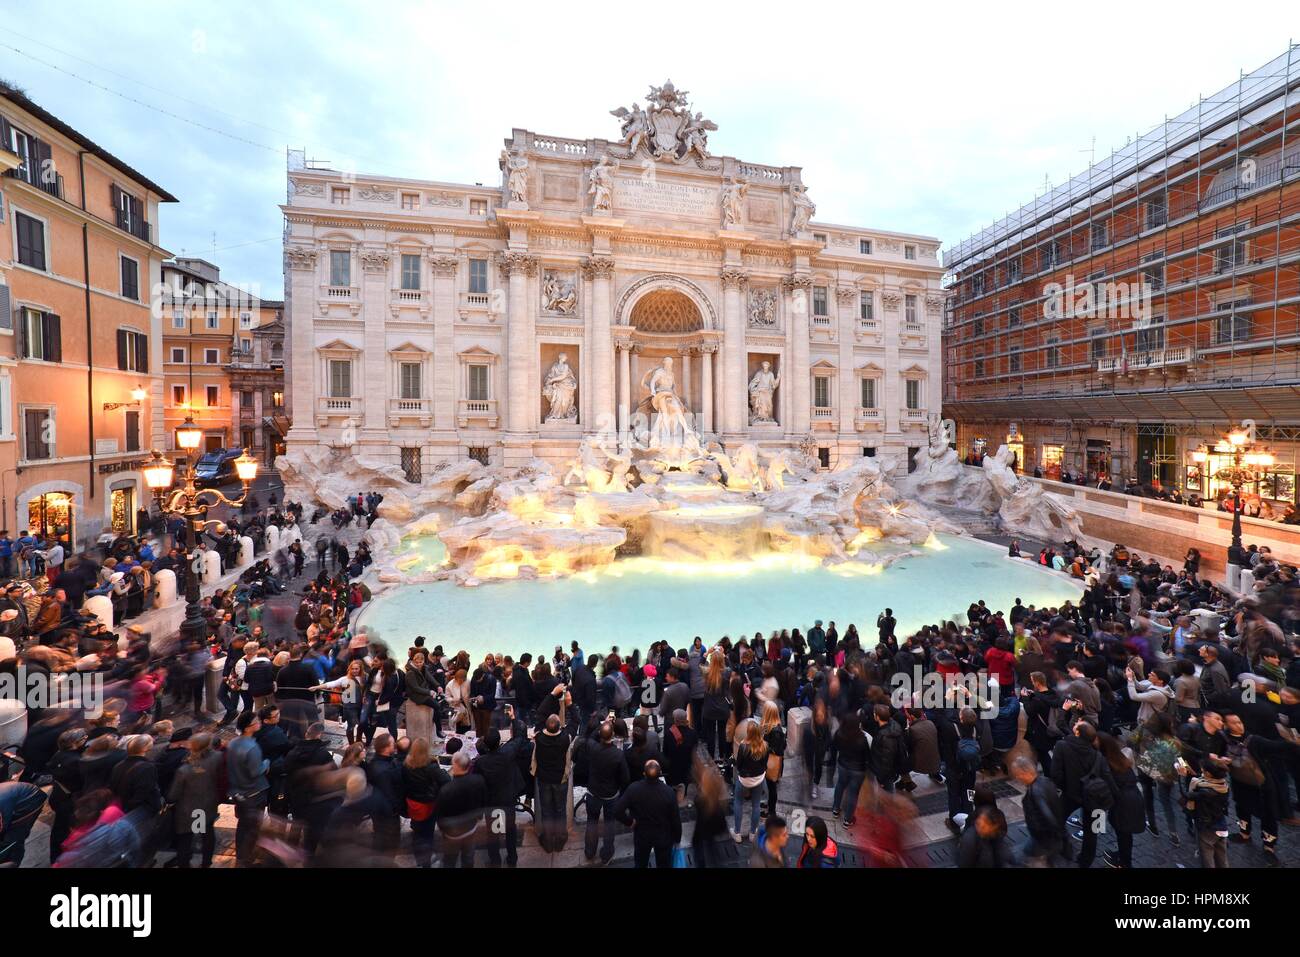 La fontana di Trevi a Roma, Italia, 17 marzo 2016 © Credito Fabio Mazzarella/Sintesi/Alamy Stock Photo Foto Stock